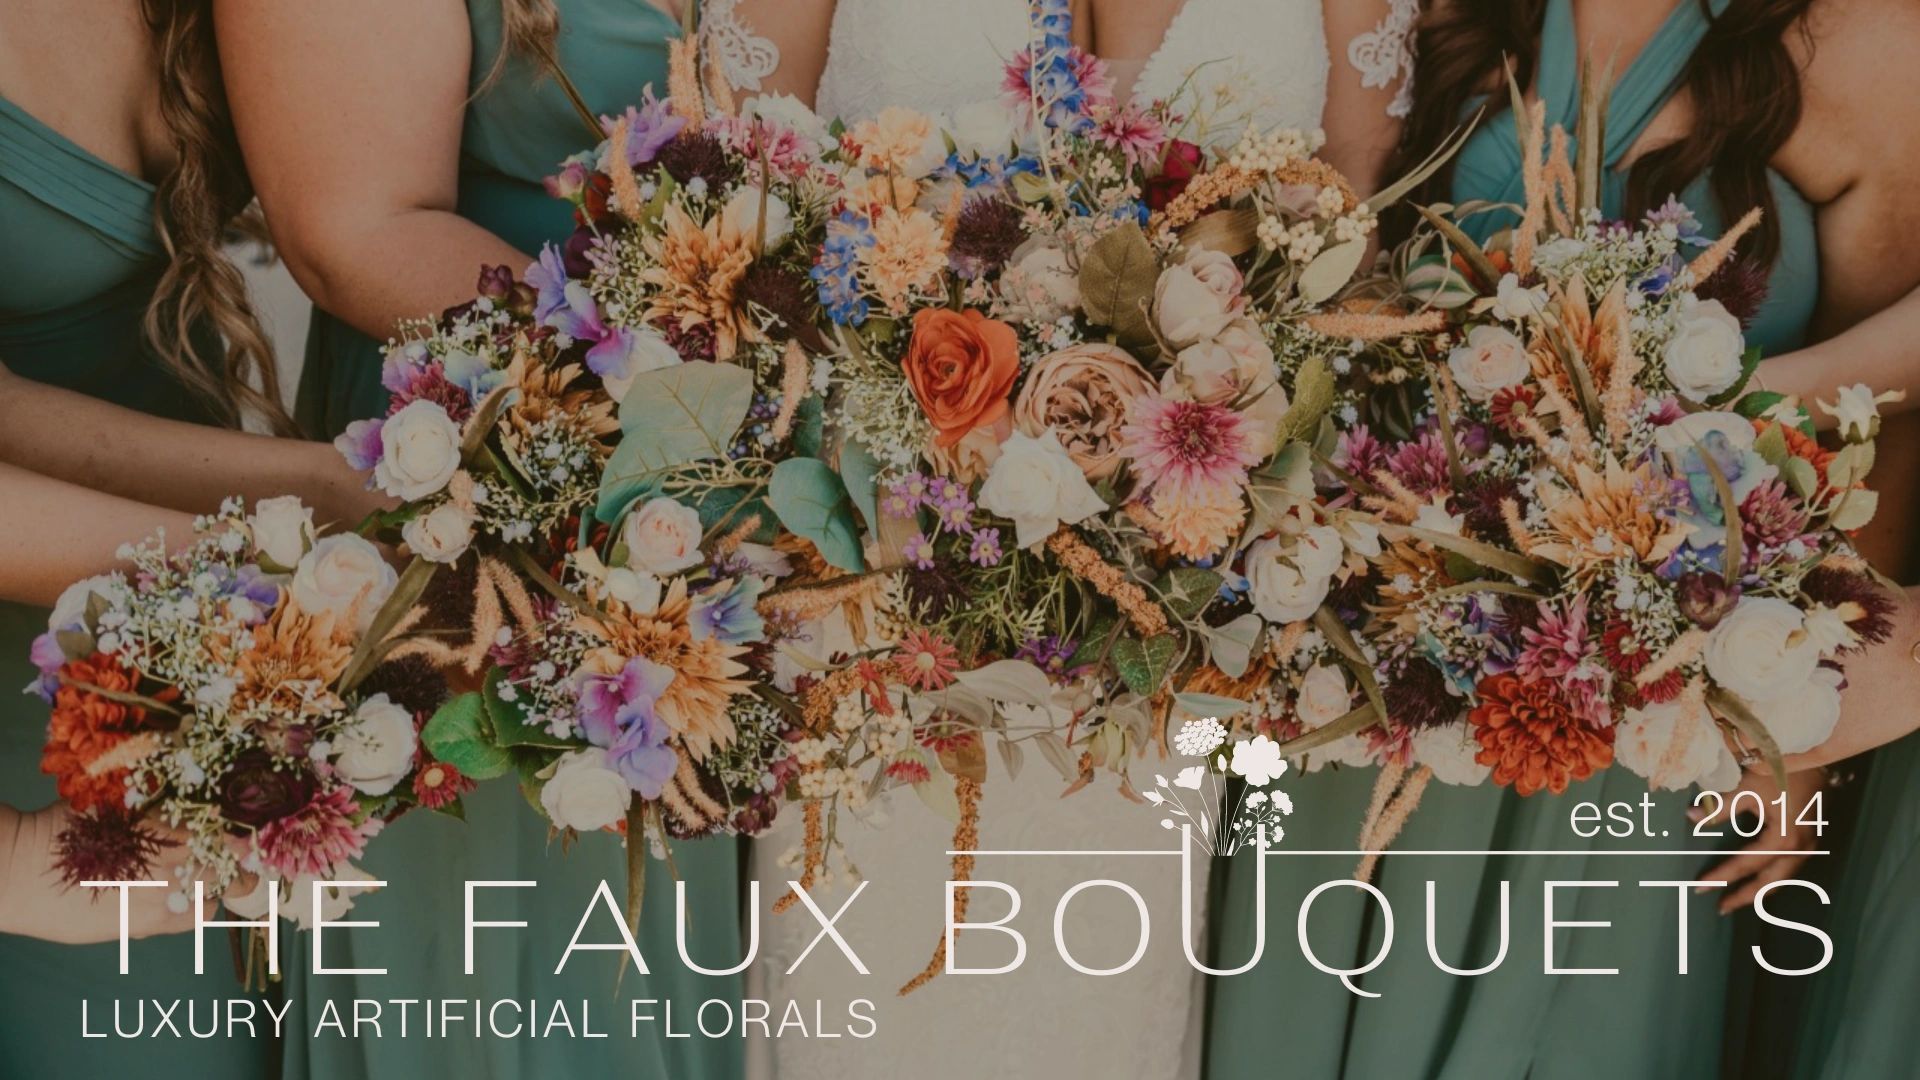 The Faux Bouquets